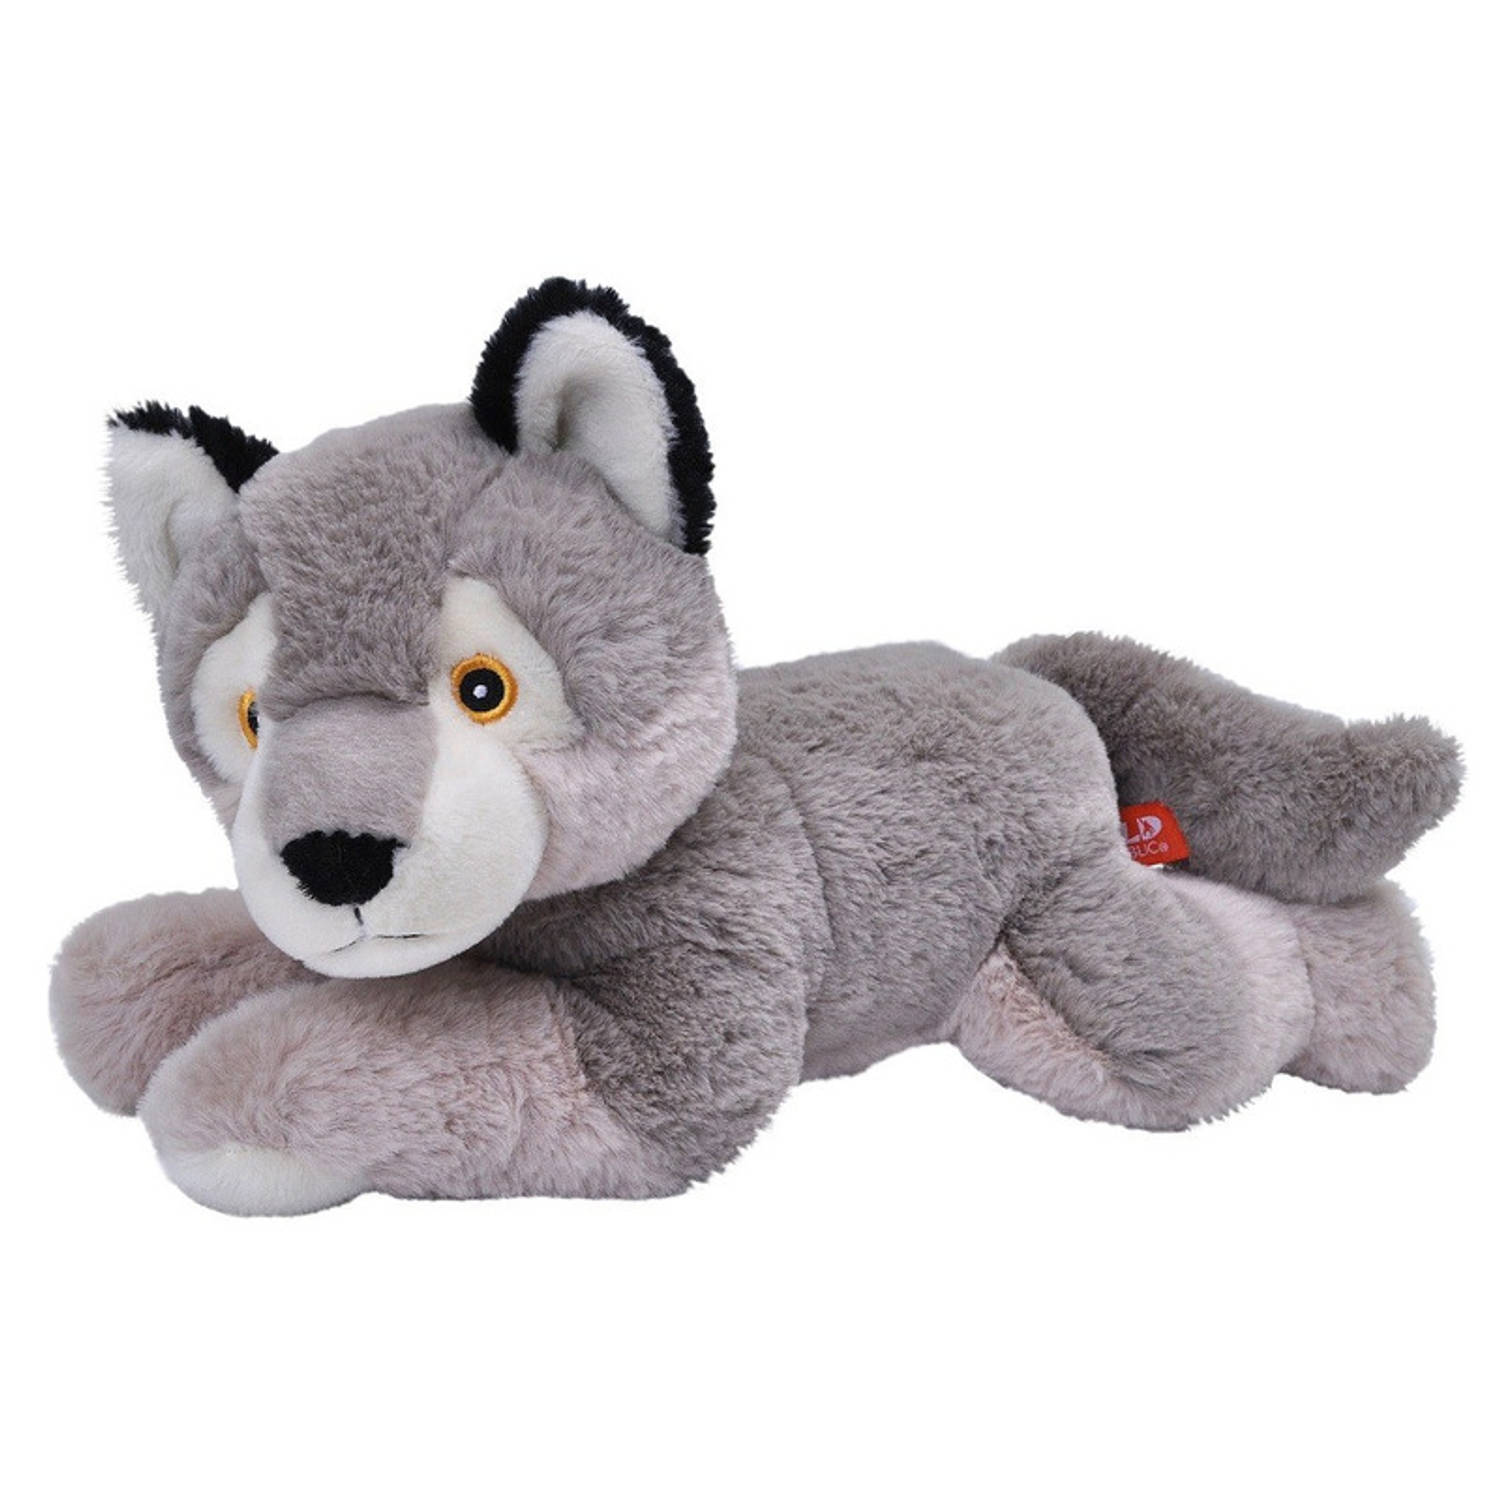 Pluche grijze wolf knuffel 30 cm - Wolven wilde dieren knuffels - Speelgoed voor kinderen